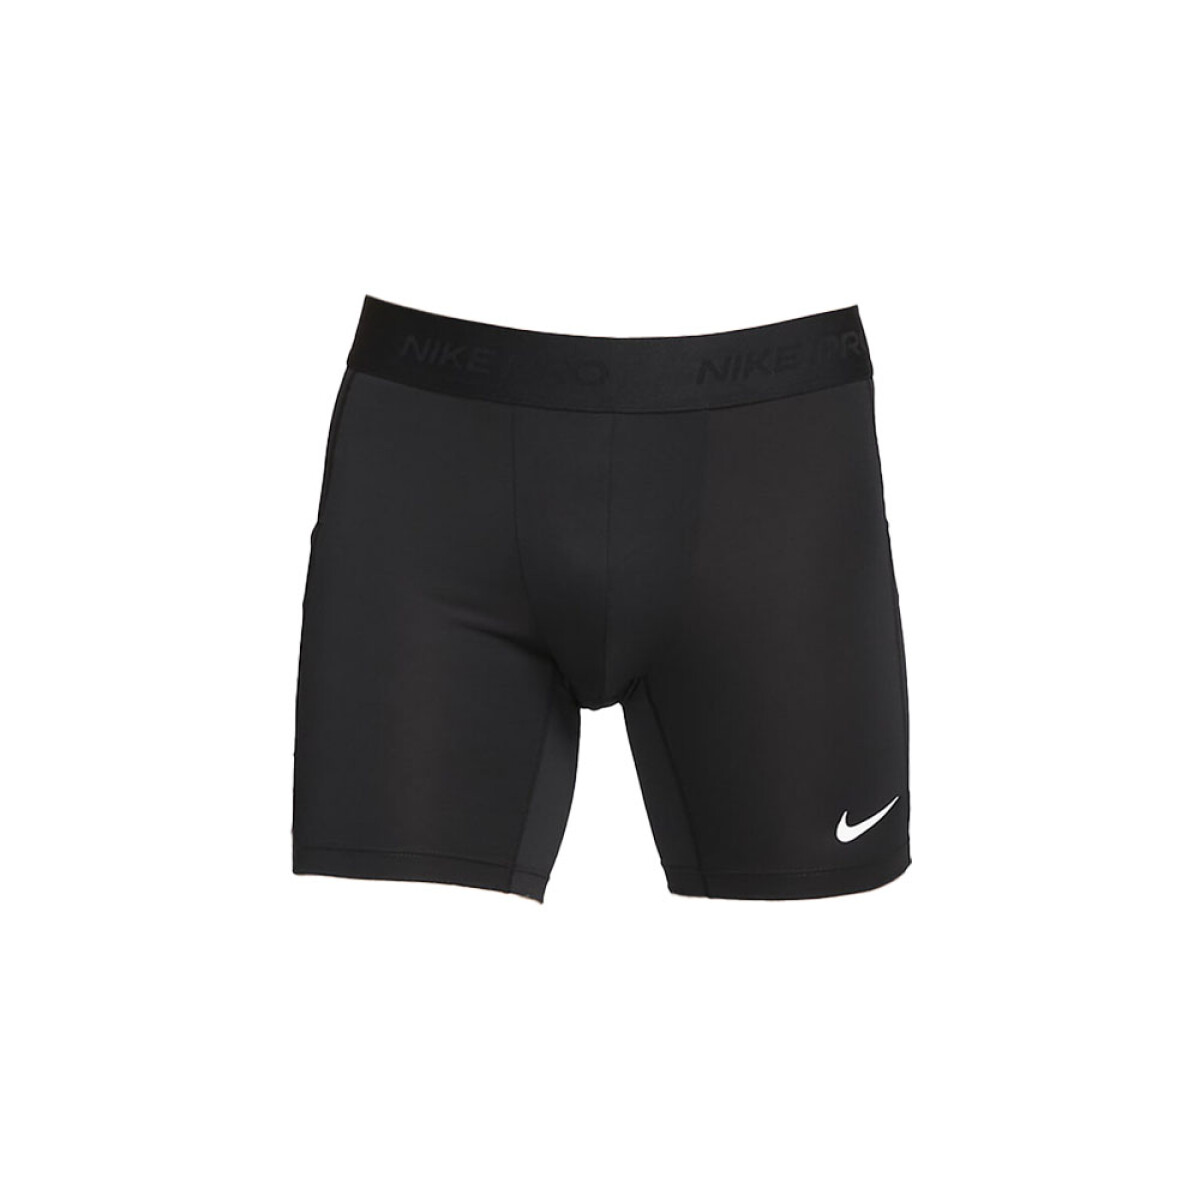 Short nike Nike Pro Mens Dri FIT Fitness - Black 